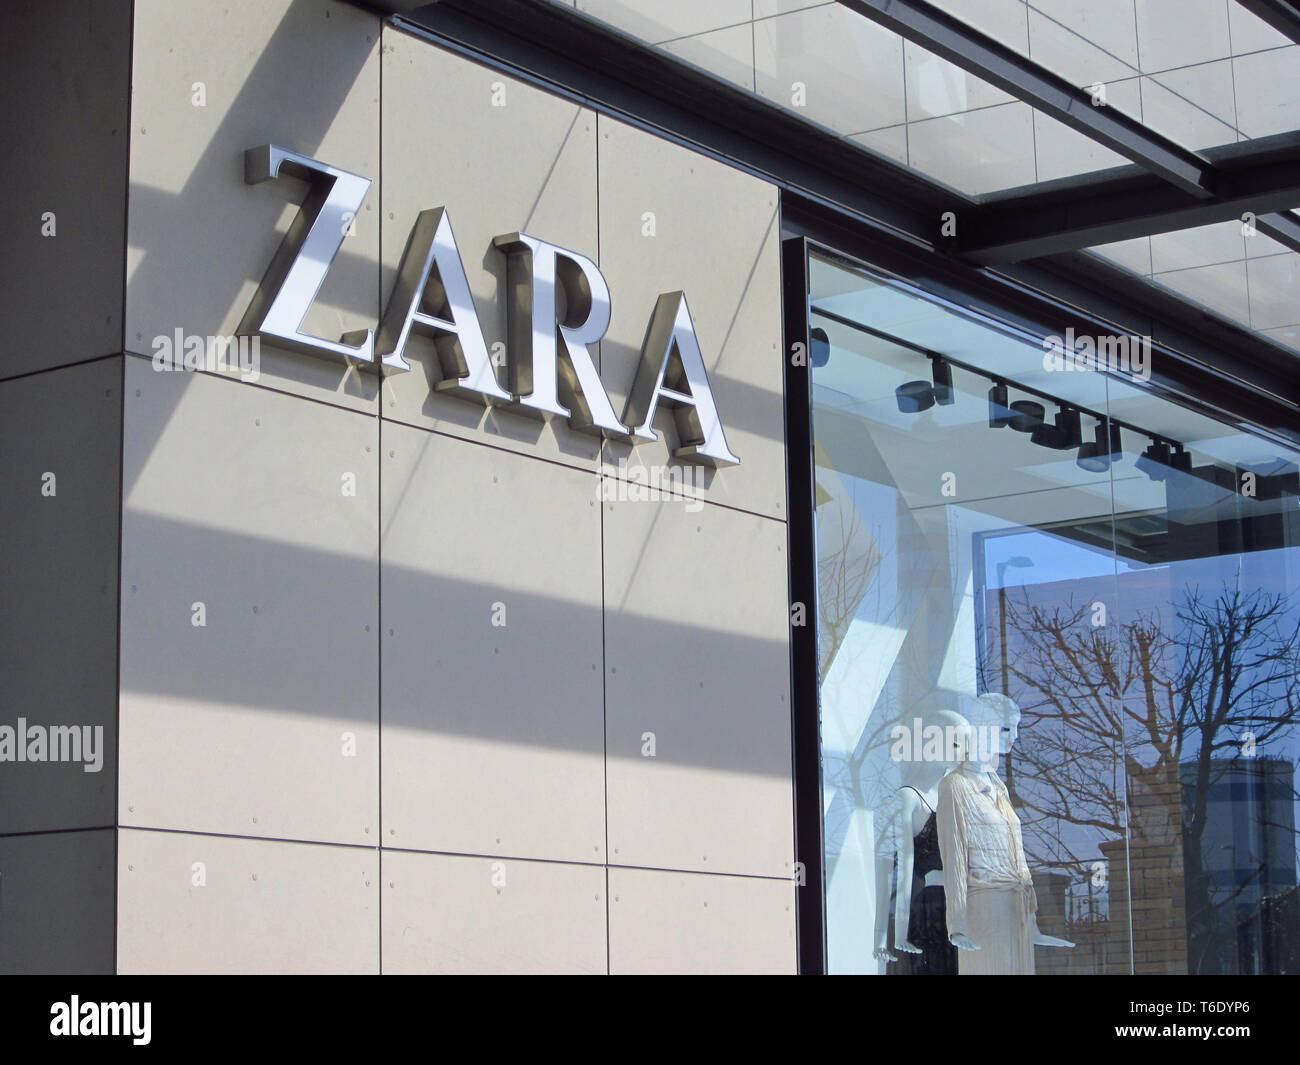 LJUBLJANA, Slowenien - 22. MÄRZ 2019: Zara ist einer der größten  internationalen Modeunternehmen, flaggschiff Chain Store der Inditex Gruppe  Stockfotografie - Alamy